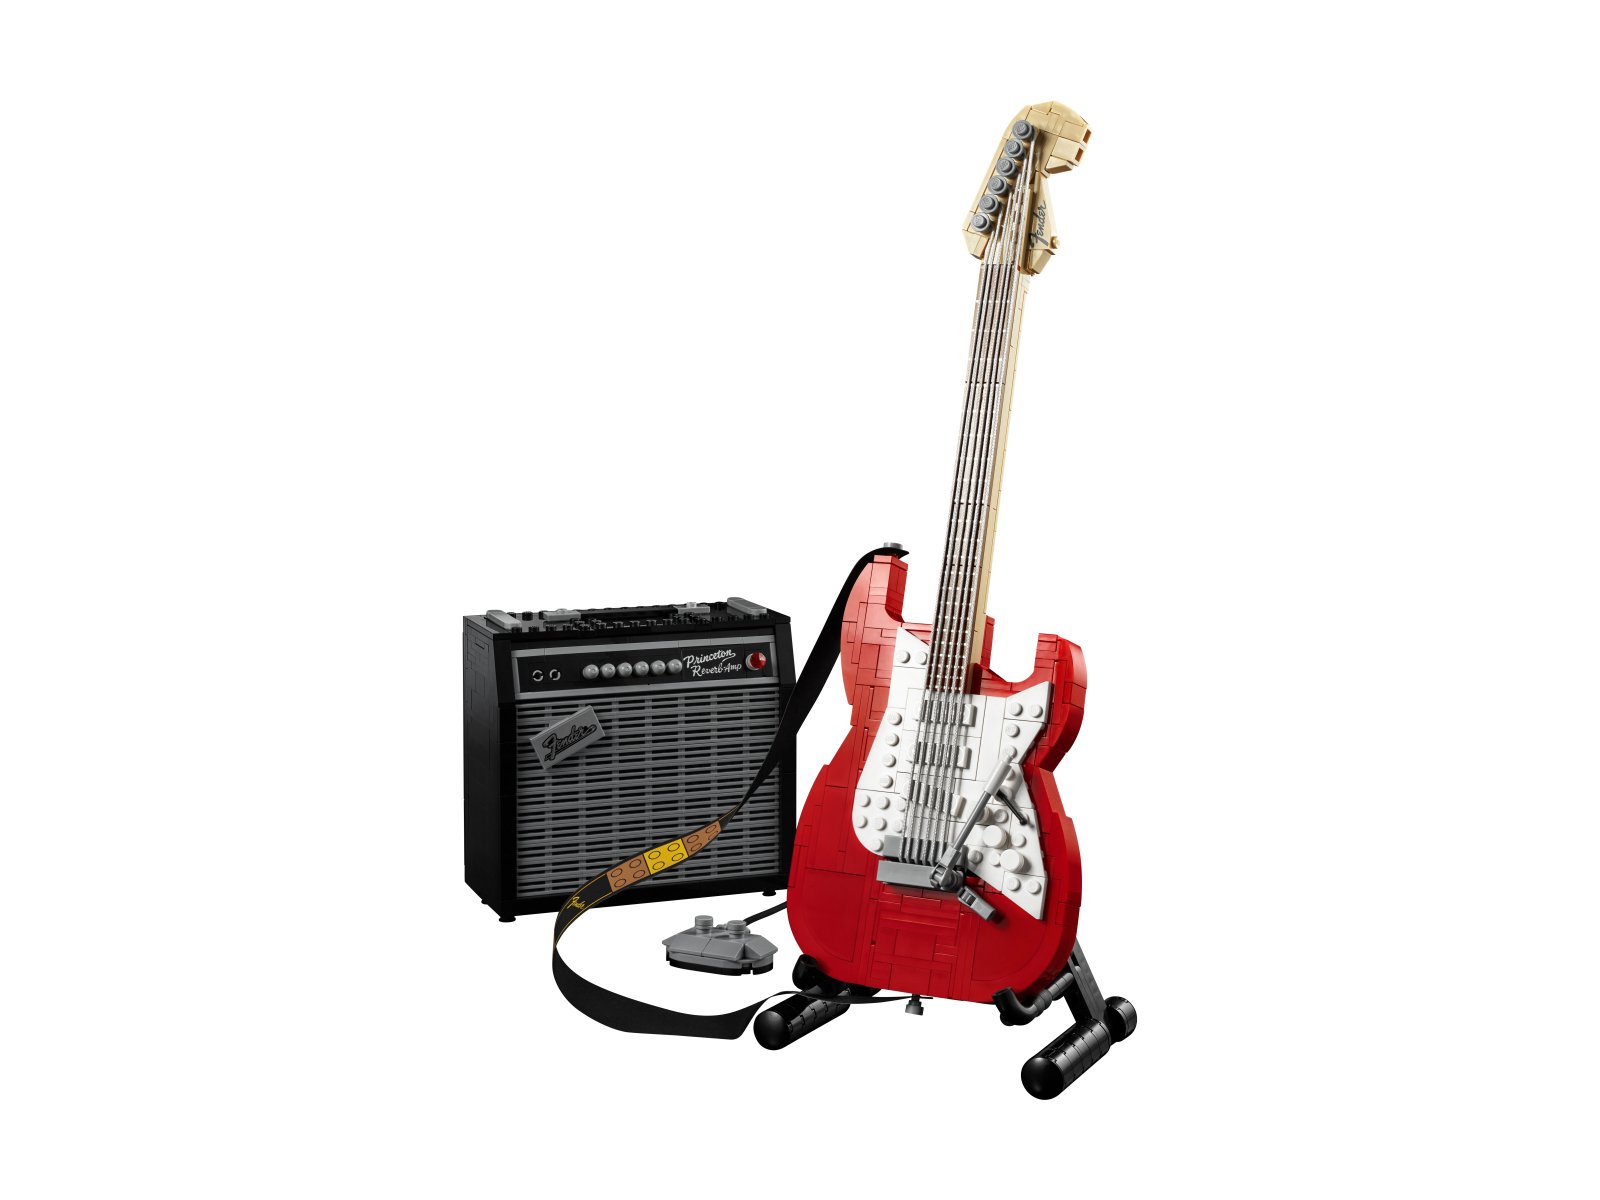 LEGO 21329 Fender® Stratocaster™